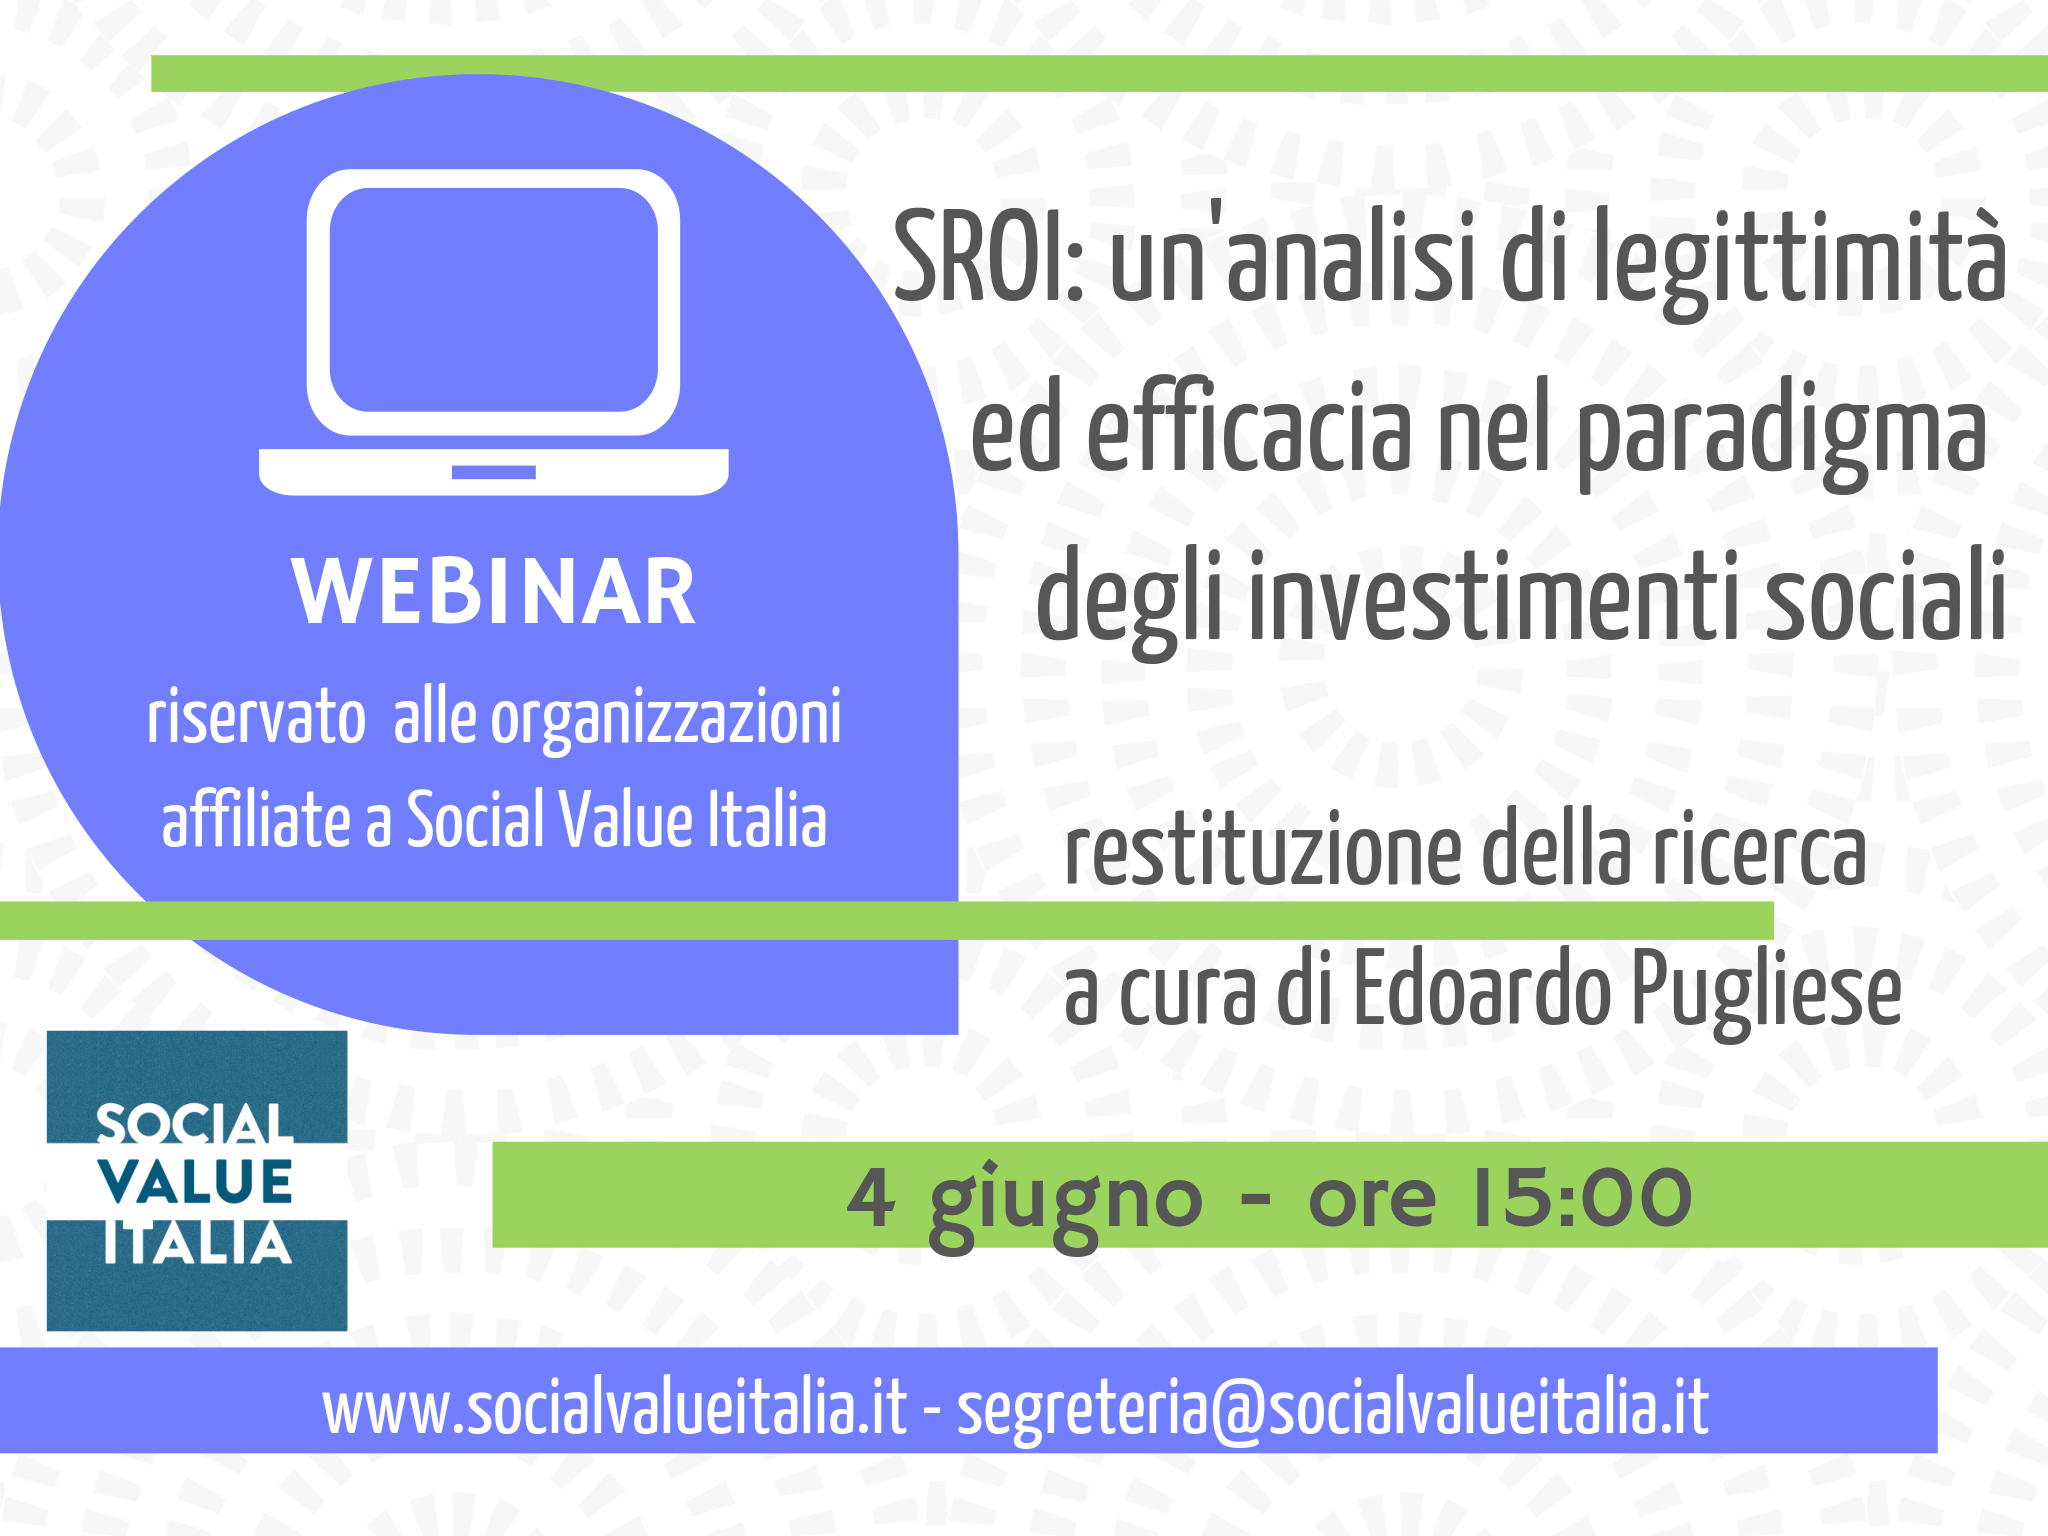 SROI: un’analisi di legittimità ed efficacia nel paradigma degli investimenti sociali.